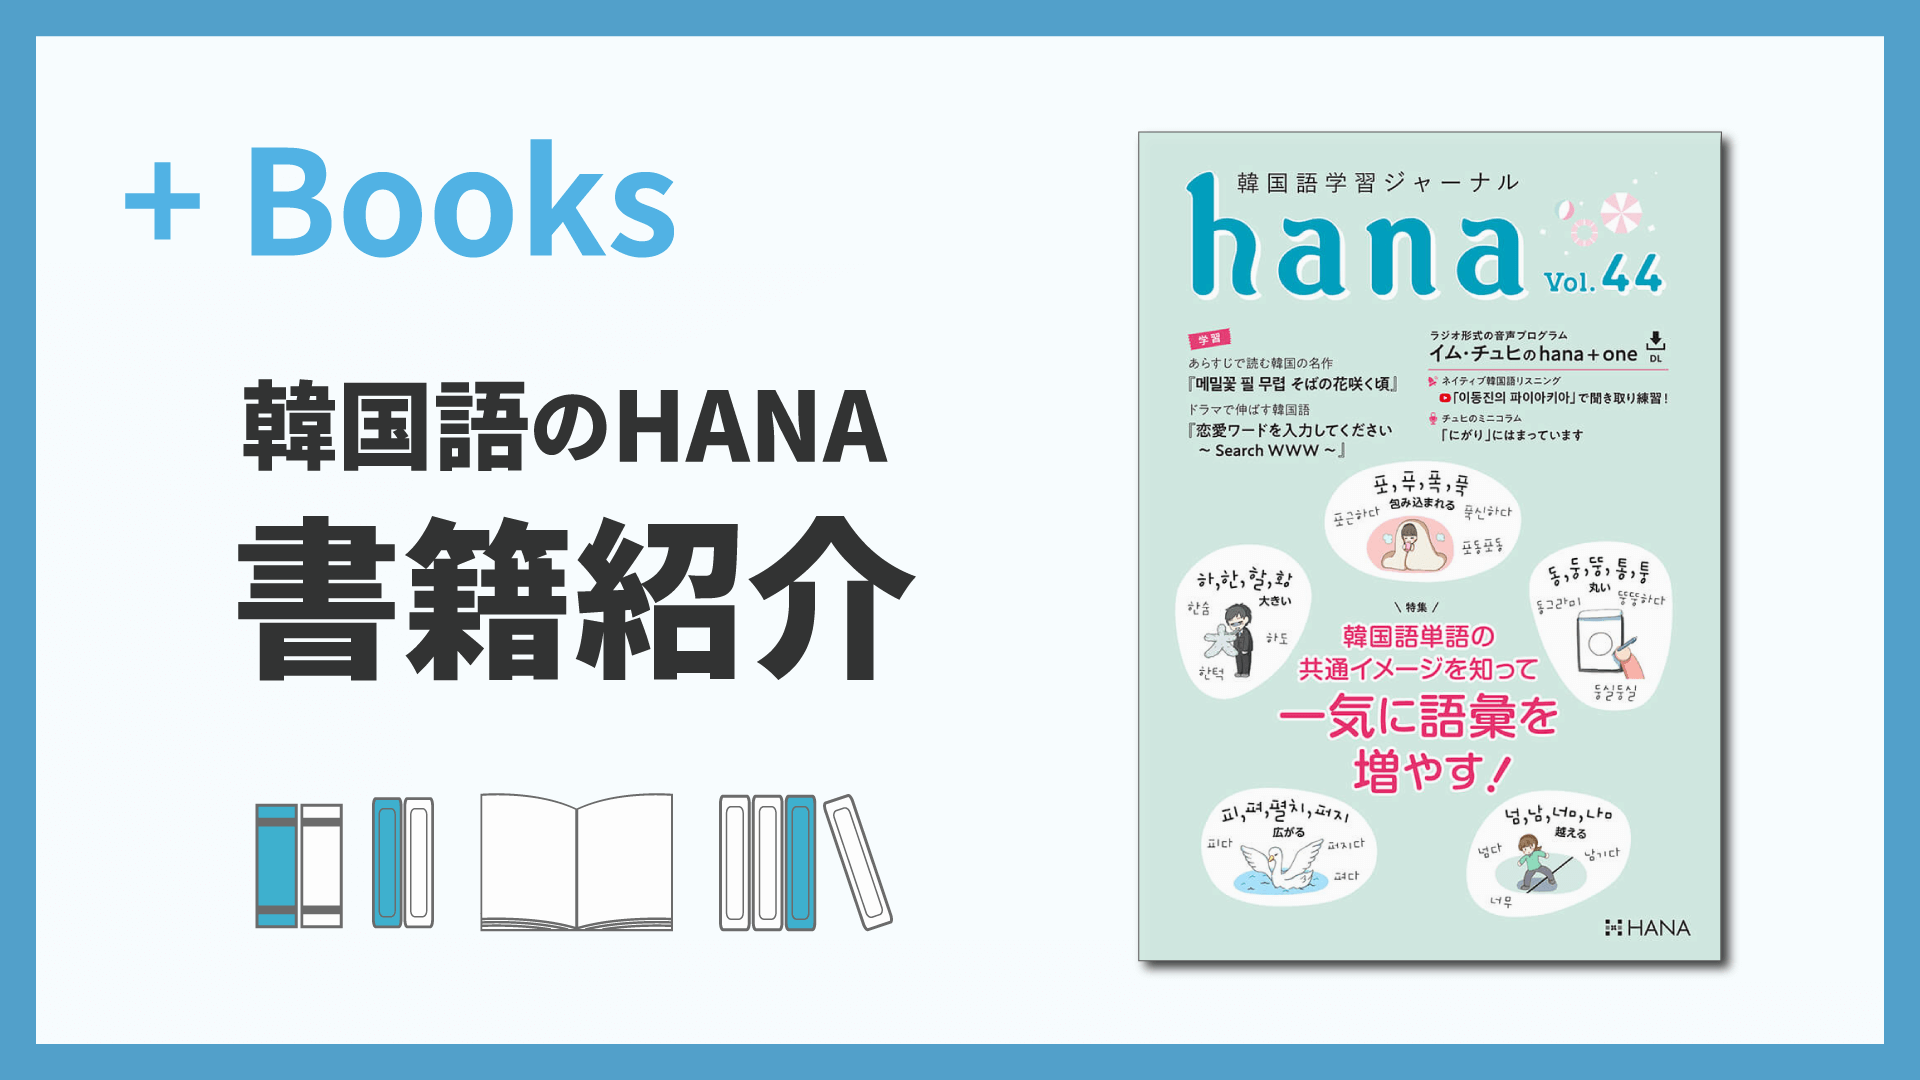 韓国語学習ジャーナルhana Vol. 44「韓国語単語の共通イメージを知って 一気に語彙を増やす! 」